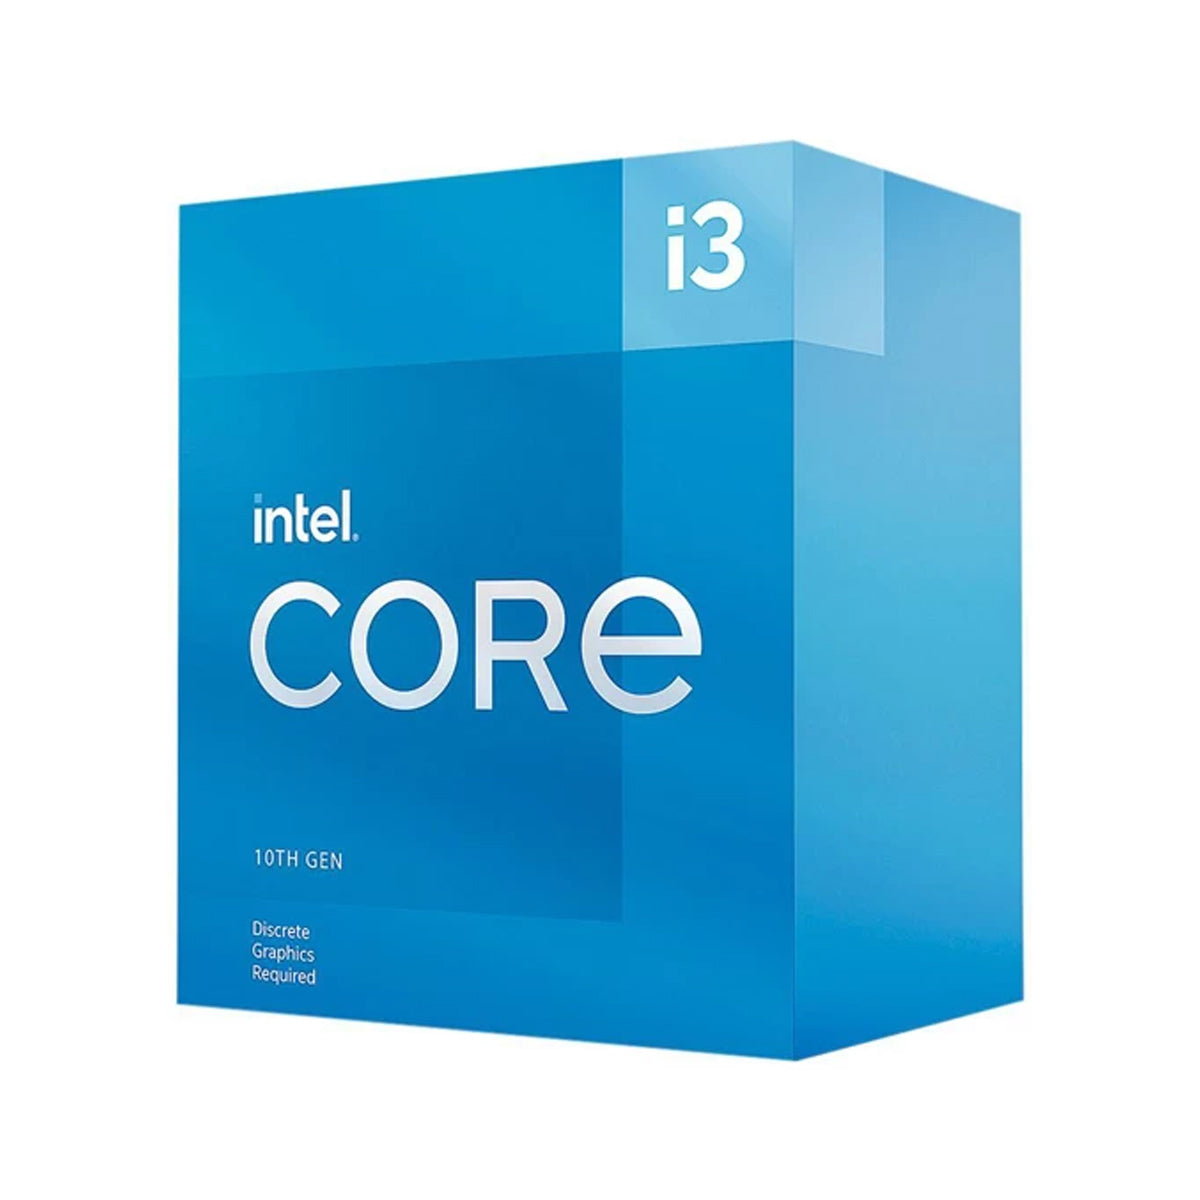 Intel Core 10th Gen i3-10105F LGA1200 Desktop Processor 4 Cores up to 4.4GHz 6MB Cache